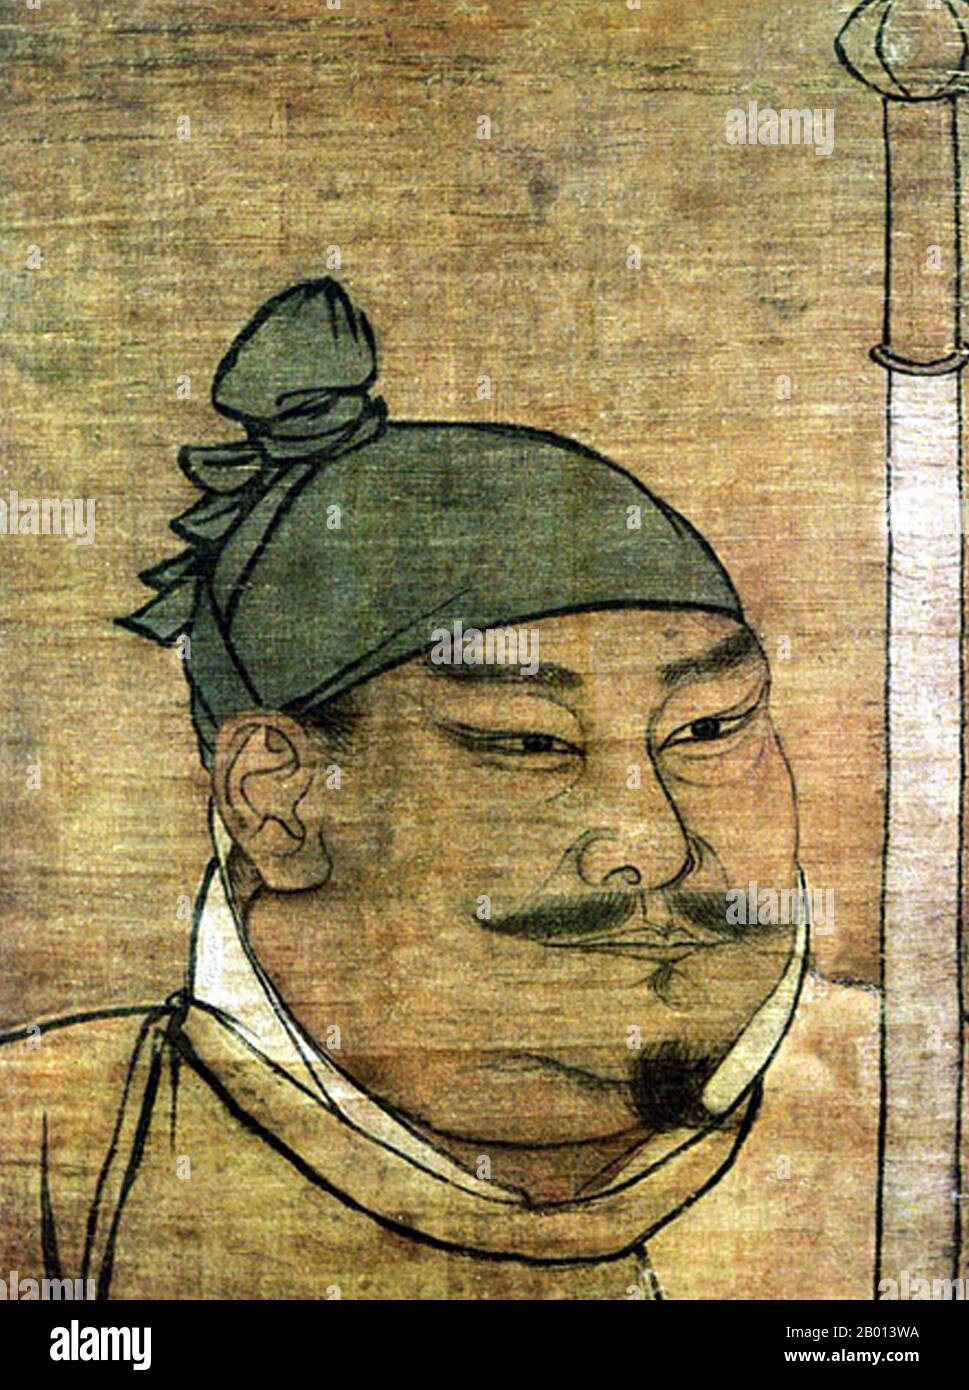 Chine : empereur Taizu (21 mars 927 - 14 novembre 976), 1er dirigeant de la dynastie Song (Nord) (r. 960-976). Détail de la peinture suspendue en rouleau, dynastie Song (960-1279) l'empereur Taizu de Song, nom personnel Zhao Kuangyin et nom de courtoisie Yuanlang, était le fondateur de la dynastie Song. En 960, Song Taizu a aidé à réunir la majeure partie de la Chine après la fragmentation et la rébellion résultant de la chute de la dynastie Tang en 907. Il a établi les règles et la politique de base de Song ancêtre pour les futurs empereurs. Il a été rappelé pour son expansion du système d'examen de la fonction publique nationale. Banque D'Images